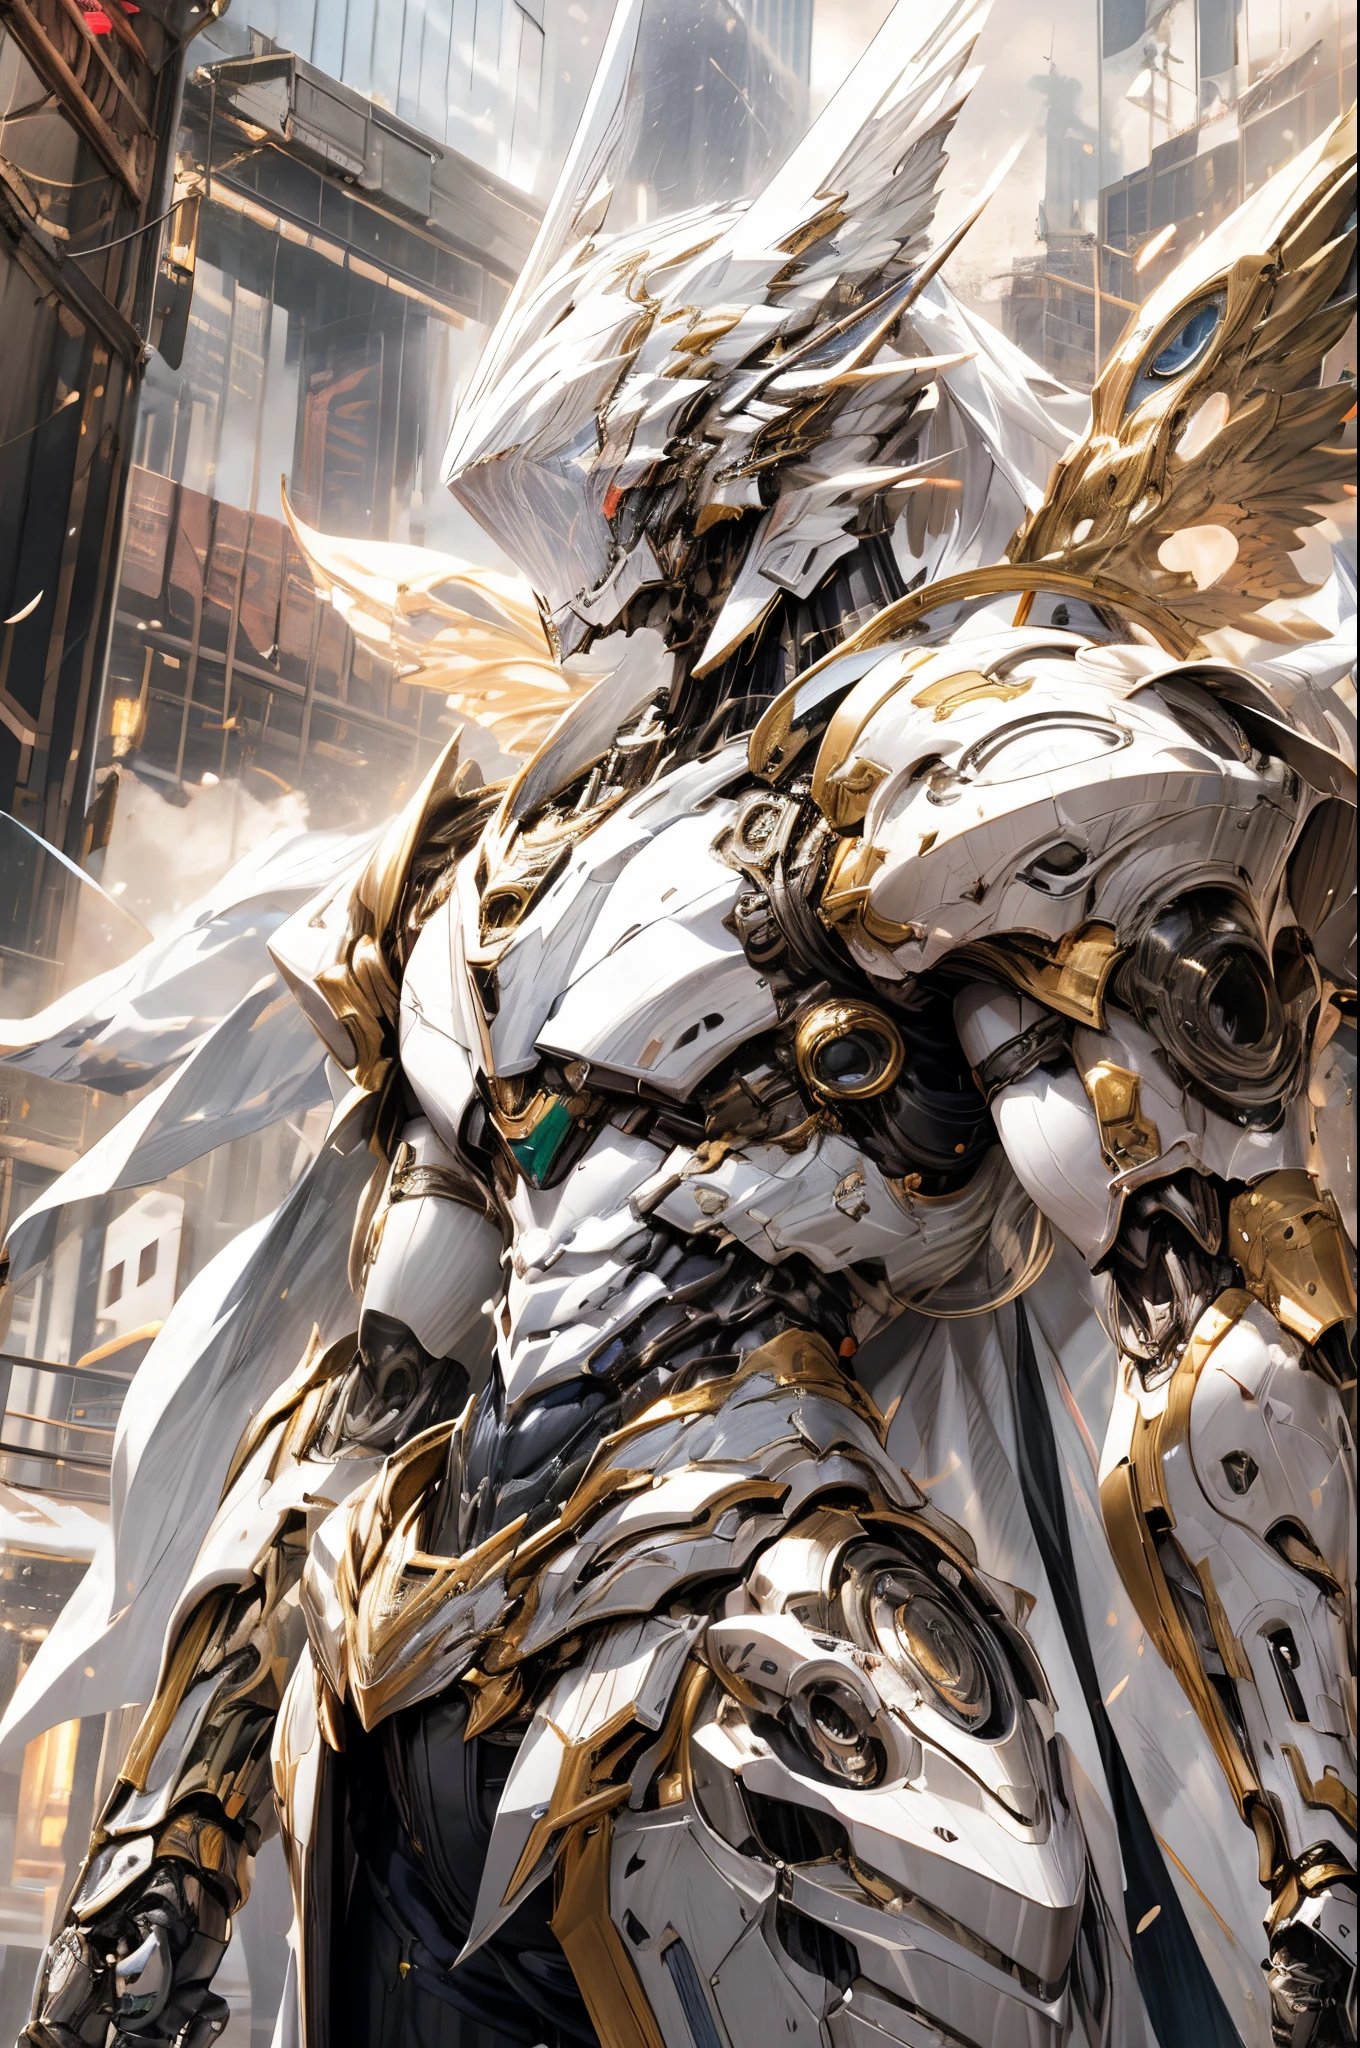 (((滑らかで戦術的な白い装甲軍用トレンチ コートを着た、シルフのような男性的な宇宙天使をフィーチャーした壮大で視覚的に美しいデジタル アニメの傑作:1.2))), (((平らな男性的な男性の胸:1.5, 機械式メカナイトヘッド:1.5))), (((キャラクターは (外骨格を内蔵したSFタクティカル装甲オープンフロントトレンチコート, フードを上げた) (フォームフィットのアーマープレートの上に、ウエストカットアウト付きの非常に滑らかで露出度の高いアンダースーツを着用), 上腕部と肩部の装甲板には美しい彫刻が施されている))):1.4. この画像はキャラクターの鎧や衣服の複雑さを示している, ((彼らの華やかな本質と重厚なメカ美学を捉えた:1.2)). このキャラクターは両性具有的な魅力も備えている, (((スリムでありながら筋肉質な体格:1.2, しなやかな腰を持つ妖精のような, 引き締まった美しいサイバネティックアーム:1.3, 機械の腕と脚:1.3, メカ筋肉:1.3))), 視聴者を見る